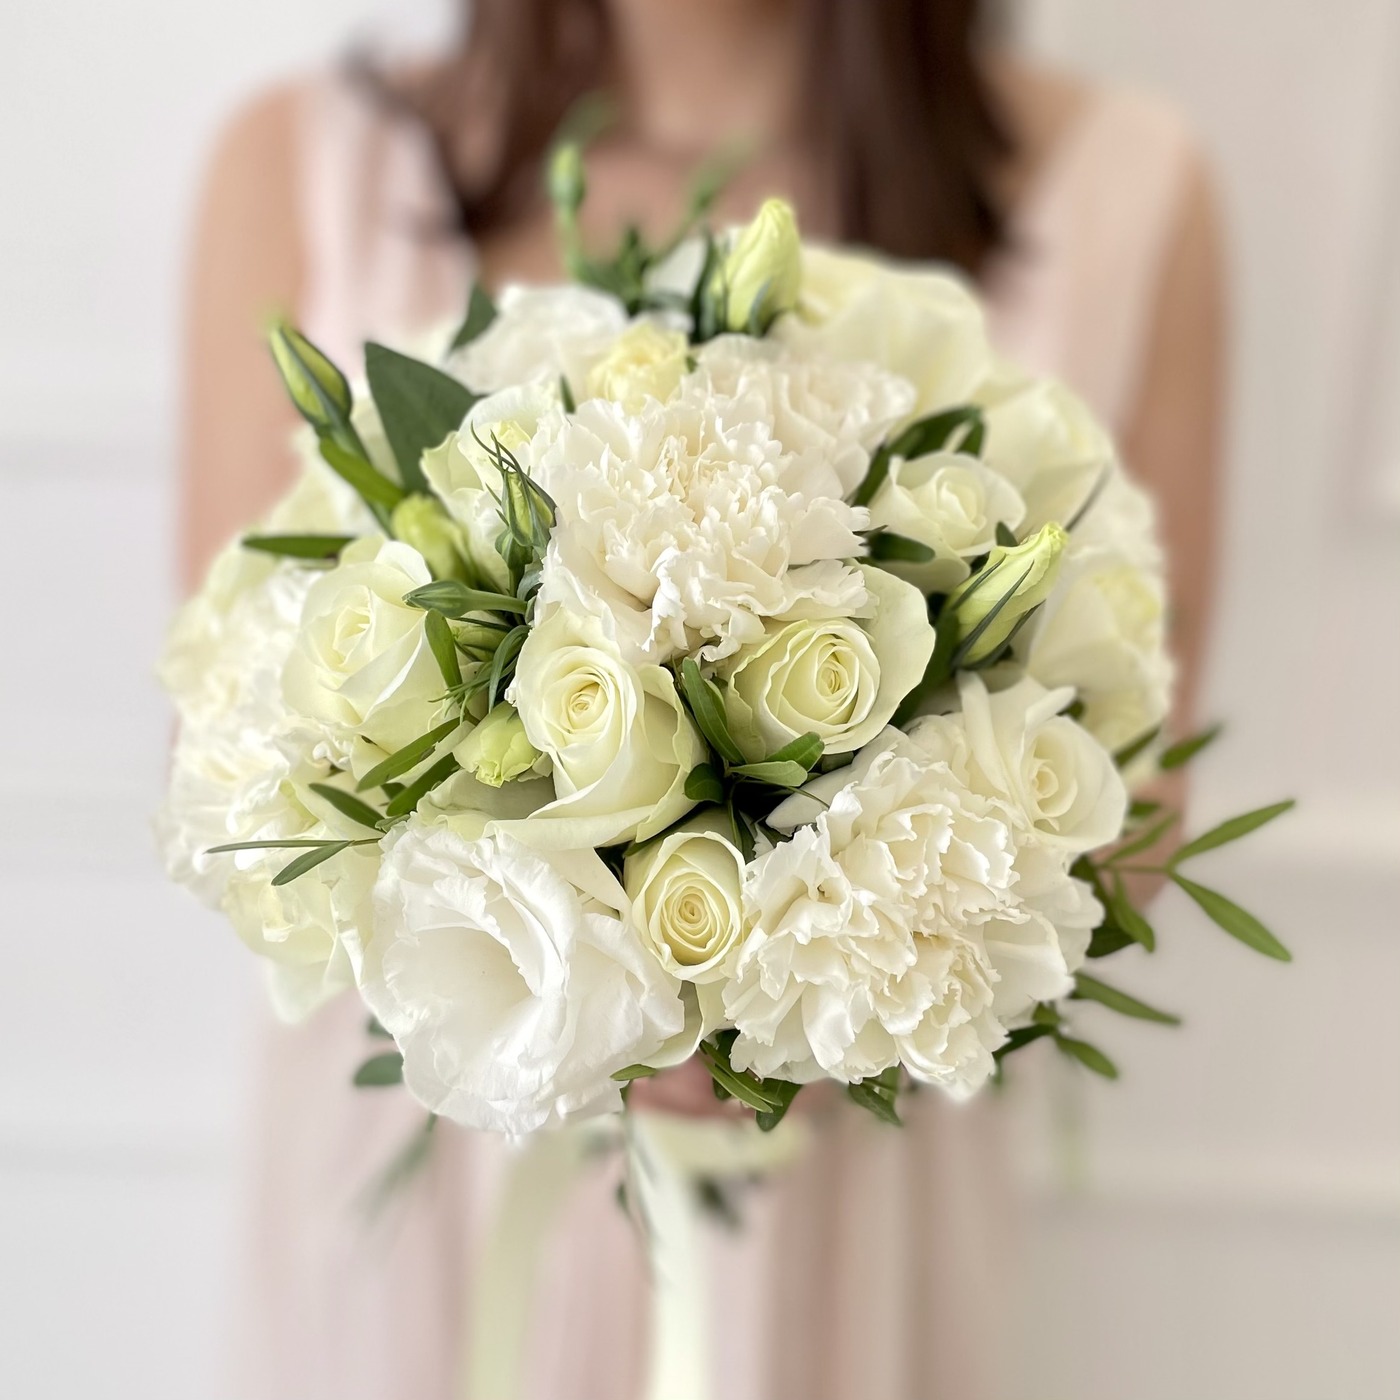 Купить букет невесты из белых роз и гвоздик до 2000 рублей с доставкой по Москве и области